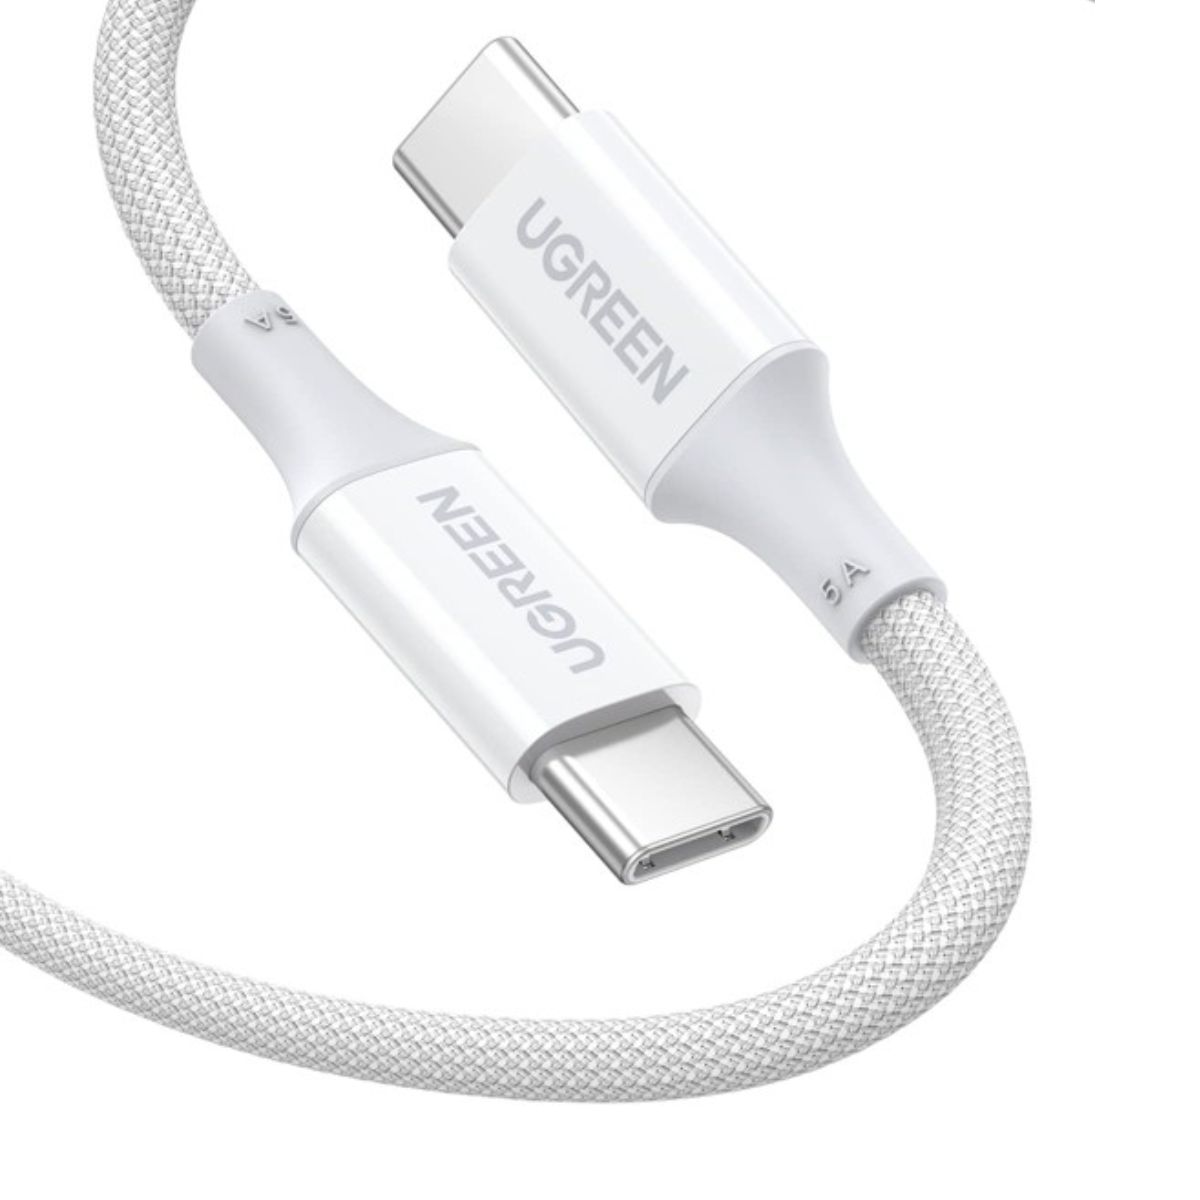 Cáp sạc chiều dài 2m silicone bọc nylon USB-C đến USB-C Ugreen 15269 US557 màu trắng, hỗ trợ PD 100W/5A